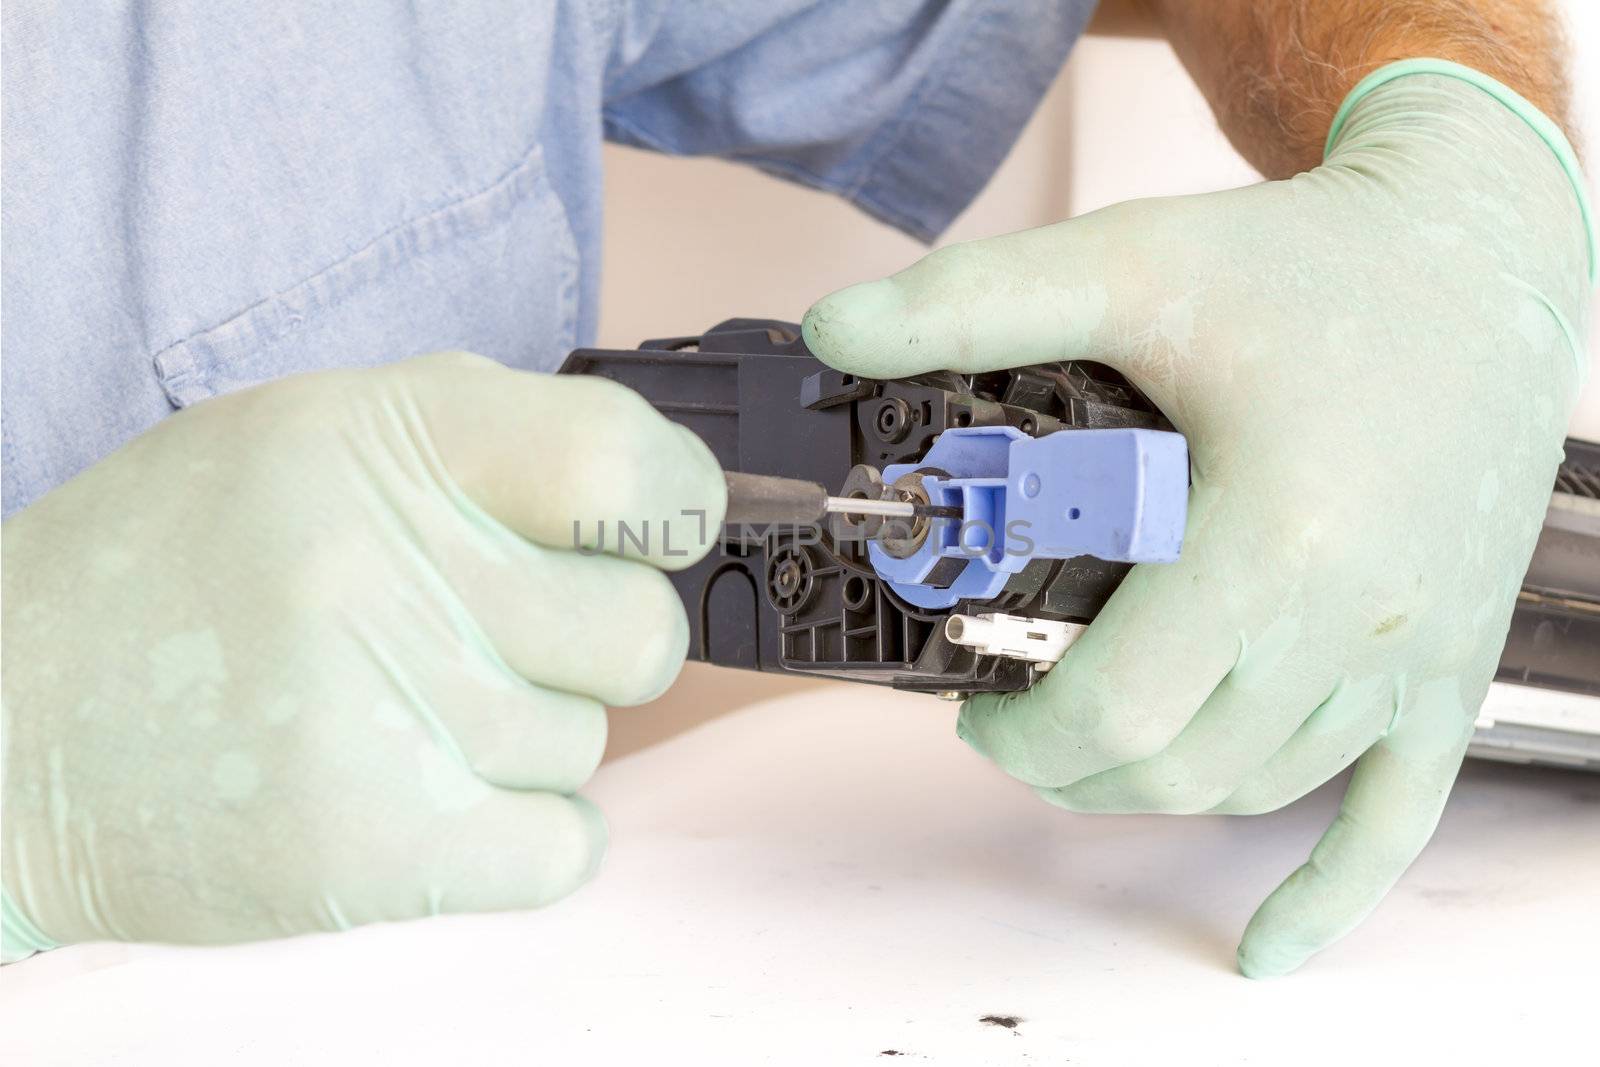 hands repairing toner cartridge by manaemedia